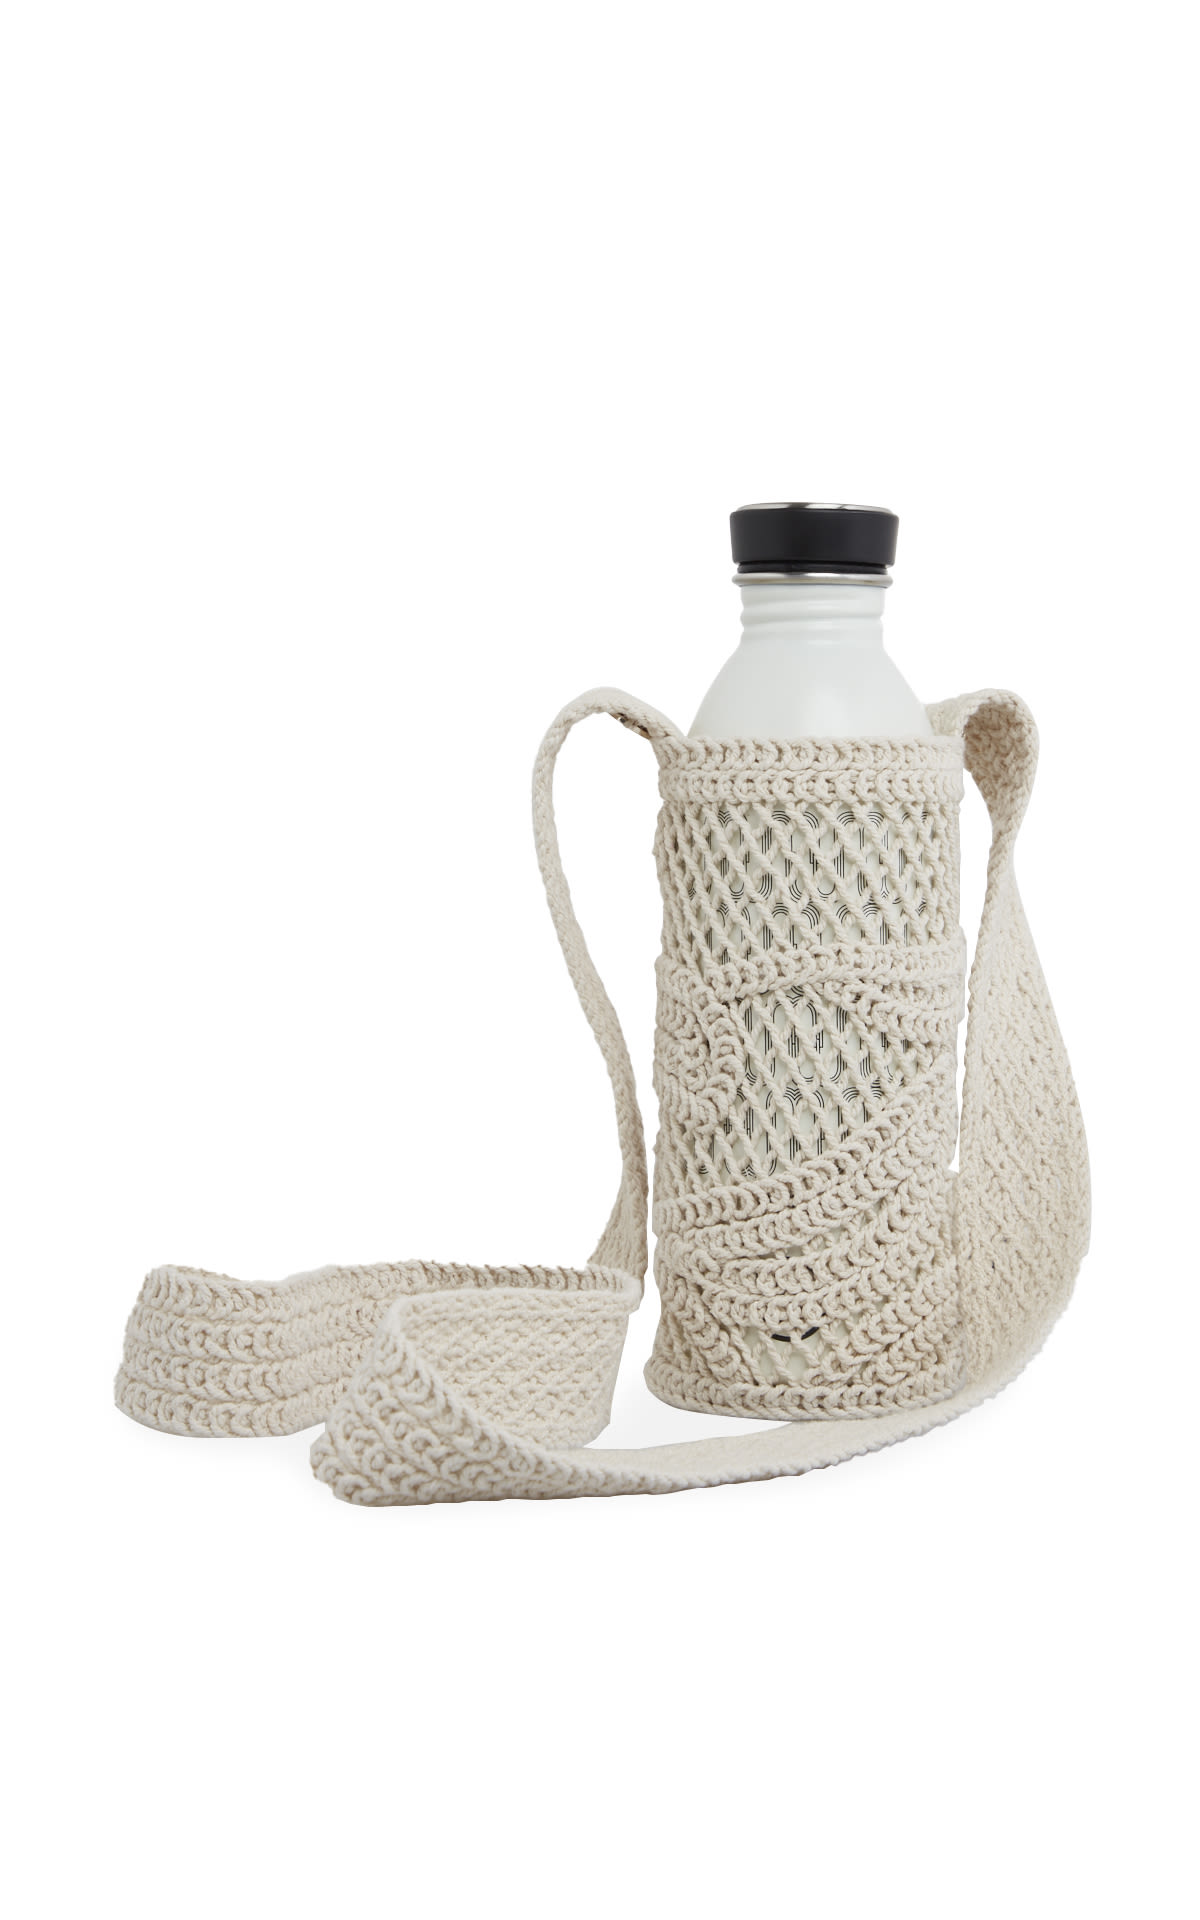 Crochet-style bottle holder 